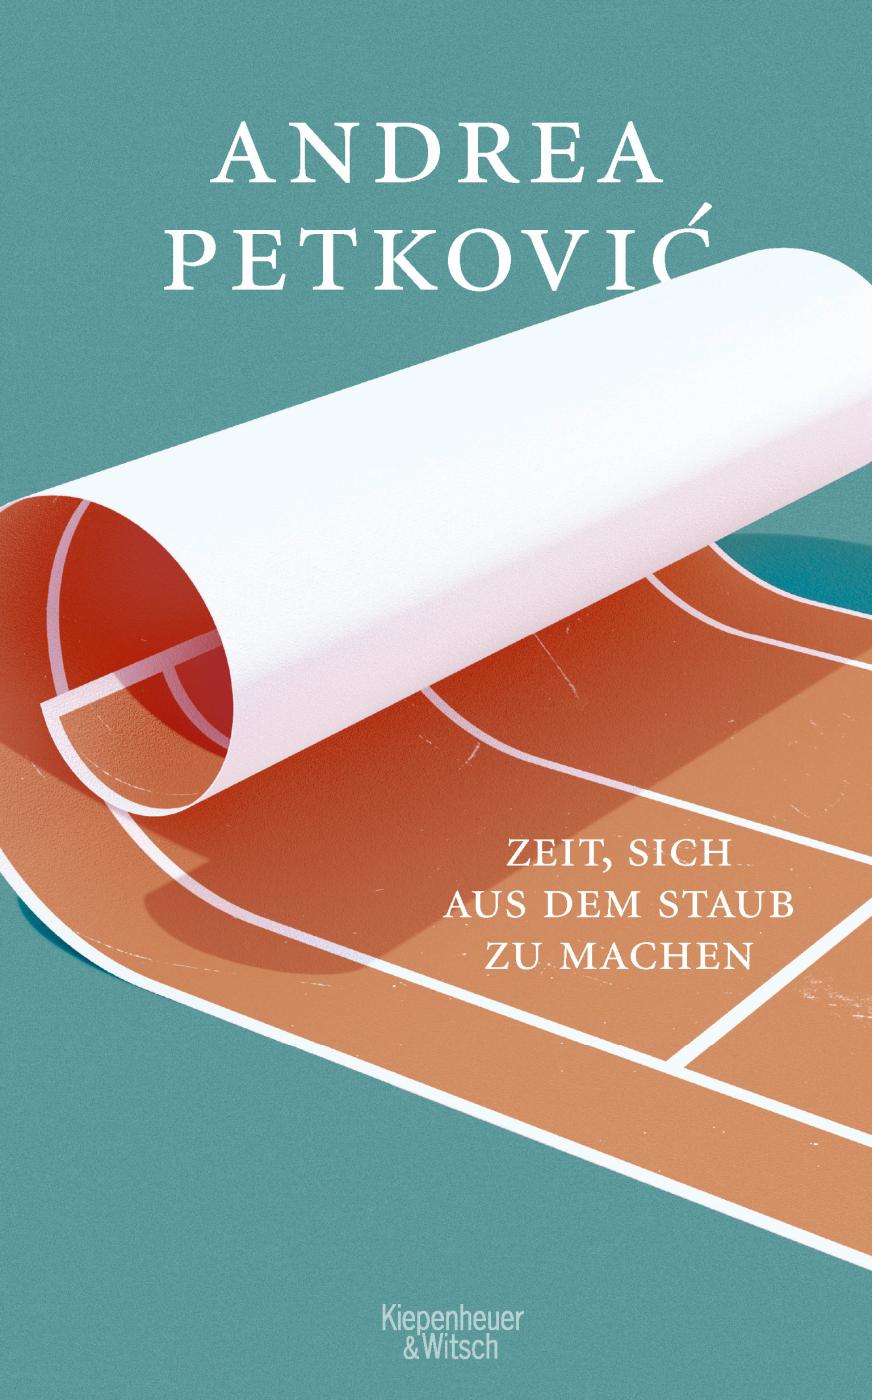 "Zeit, sich aus dem Staub zu machen": In ihrem zweiten Buch verarbeitet Andrea Petkovic das Ende ihrer Tenniskarriere - auf literarisch glänzendem Niveau.